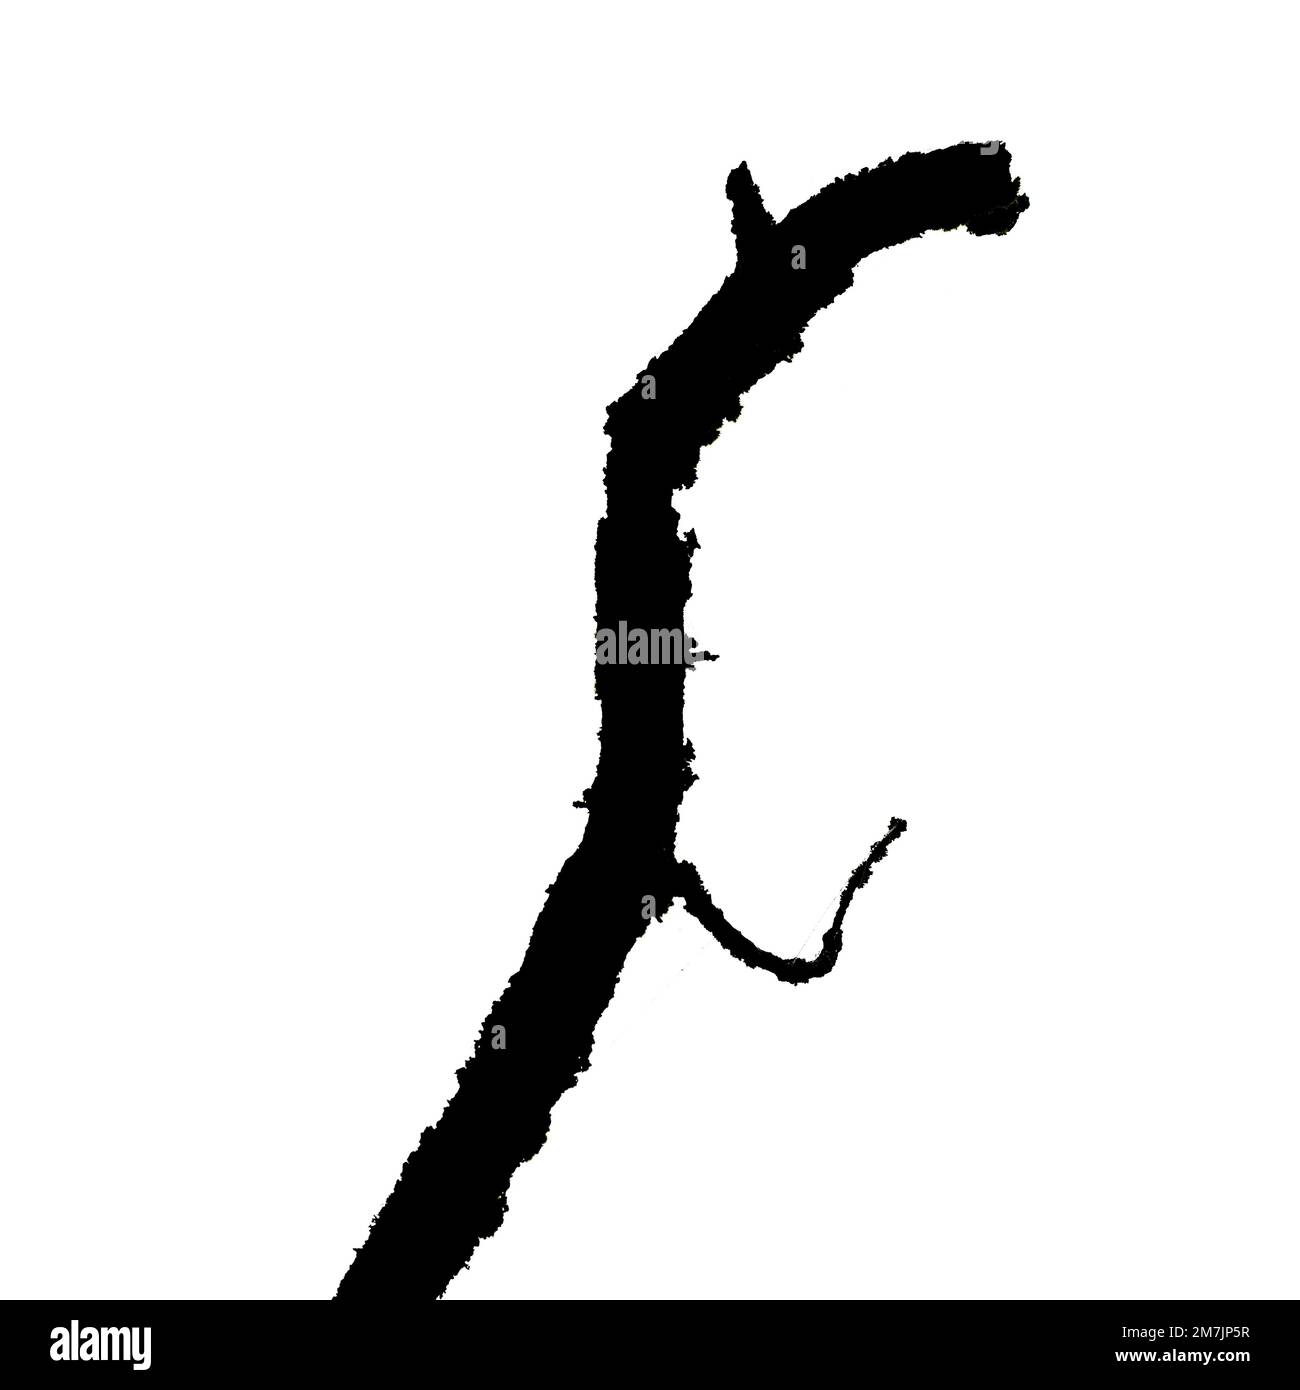 Illustrazione di una silhouette nera di rami d'albero isolati sullo sfondo bianco vuoto Foto Stock